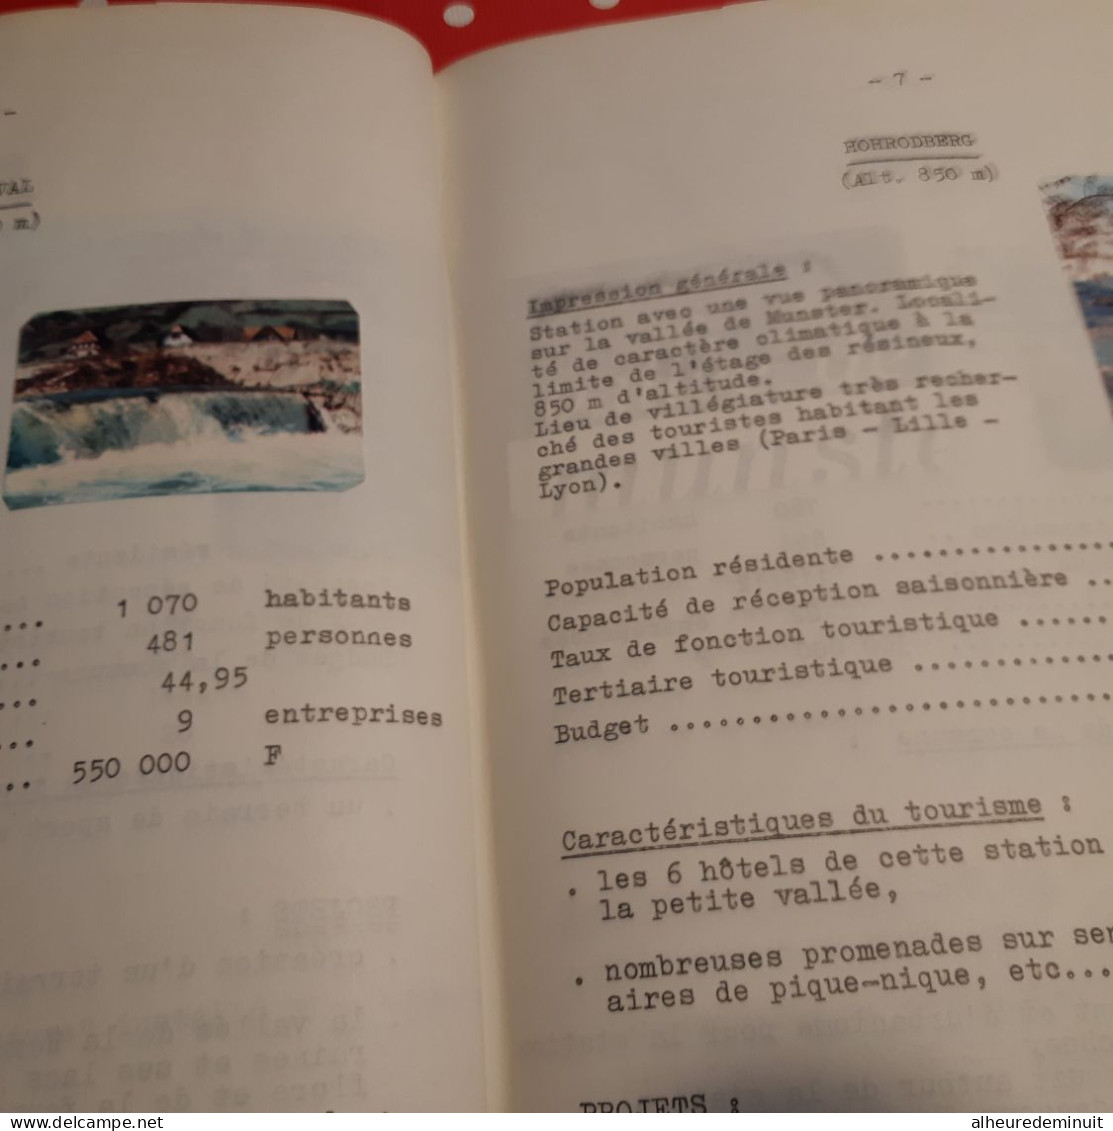 ETUDE TOURISTIQUE VALLEE DE MUNSTER"1974"Carte de vallée de MUNSTER"Du TANET"courbes isochrones"photos HOTELS"ALSACE...